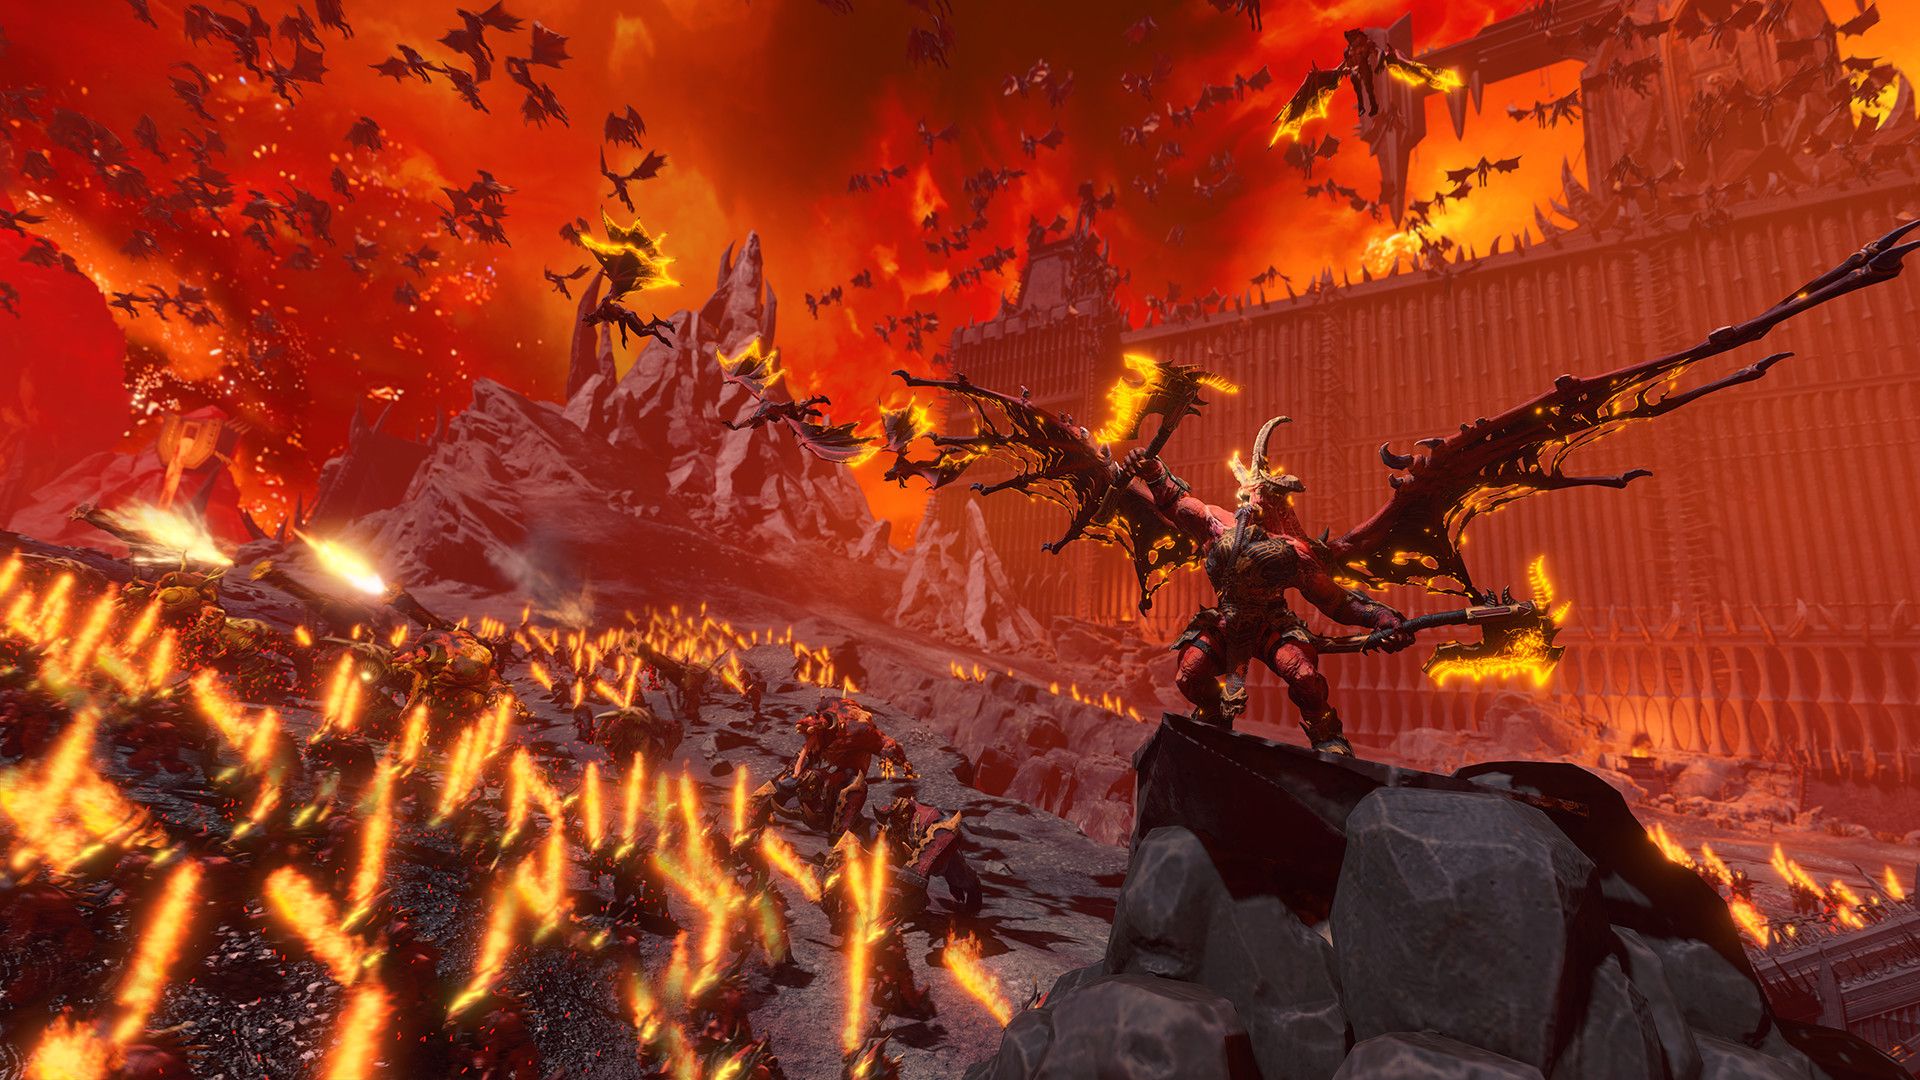 Total War: Warhammer 3 Skarbrand, Legendary Lord of Khorne